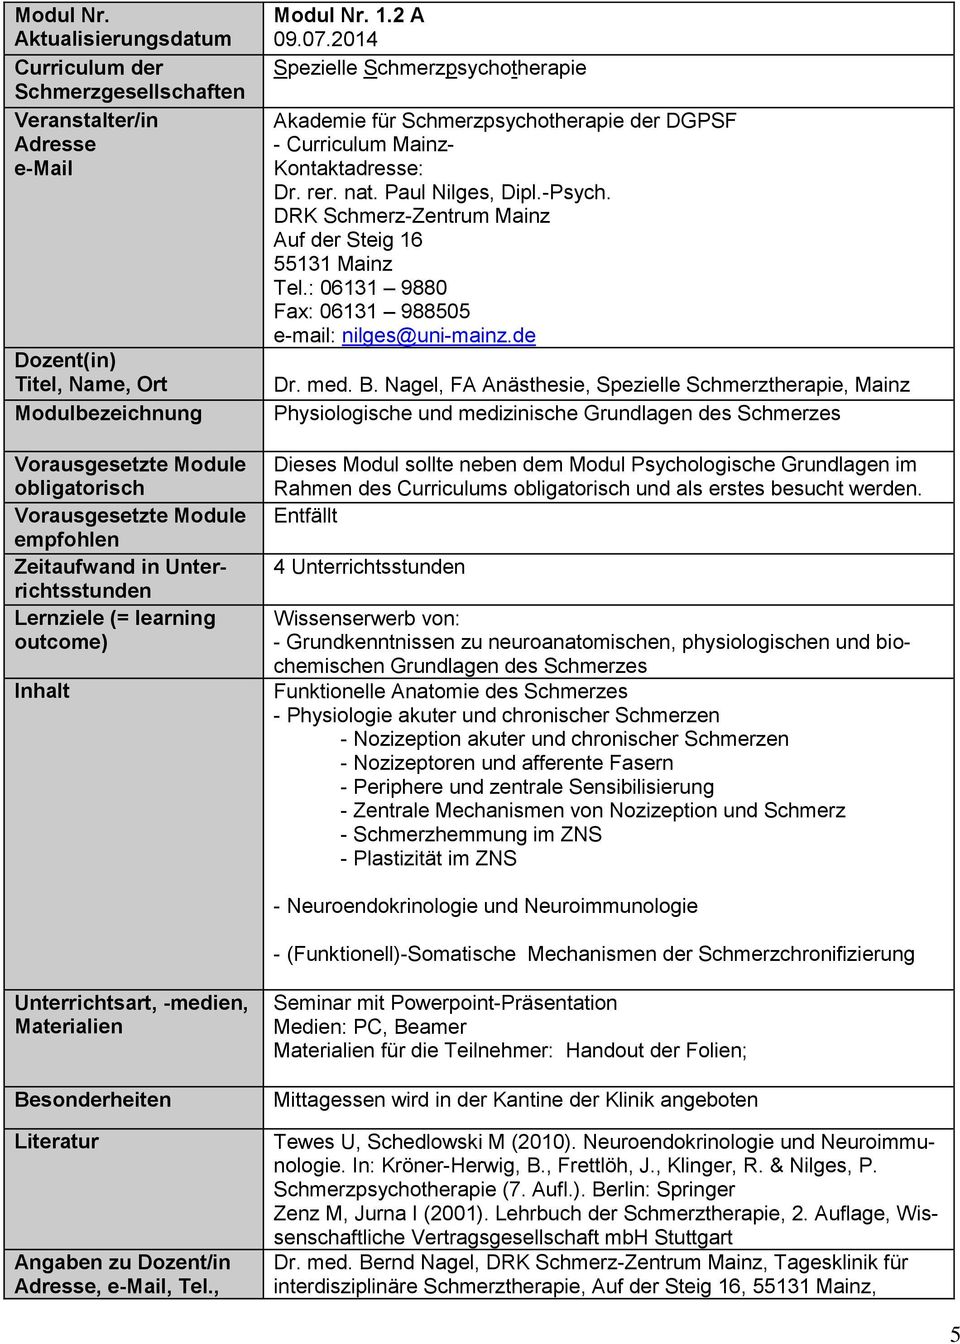 2 A - Curriculum Mainz- Dr. rer. nat. Paul Nilges, Dipl.-Psych. DRK Schmerz-Zentrum Mainz Tel.: 06131 9880 Fax: 06131 988505 e-mail: nilges@uni-mainz.de Dr. med. B.